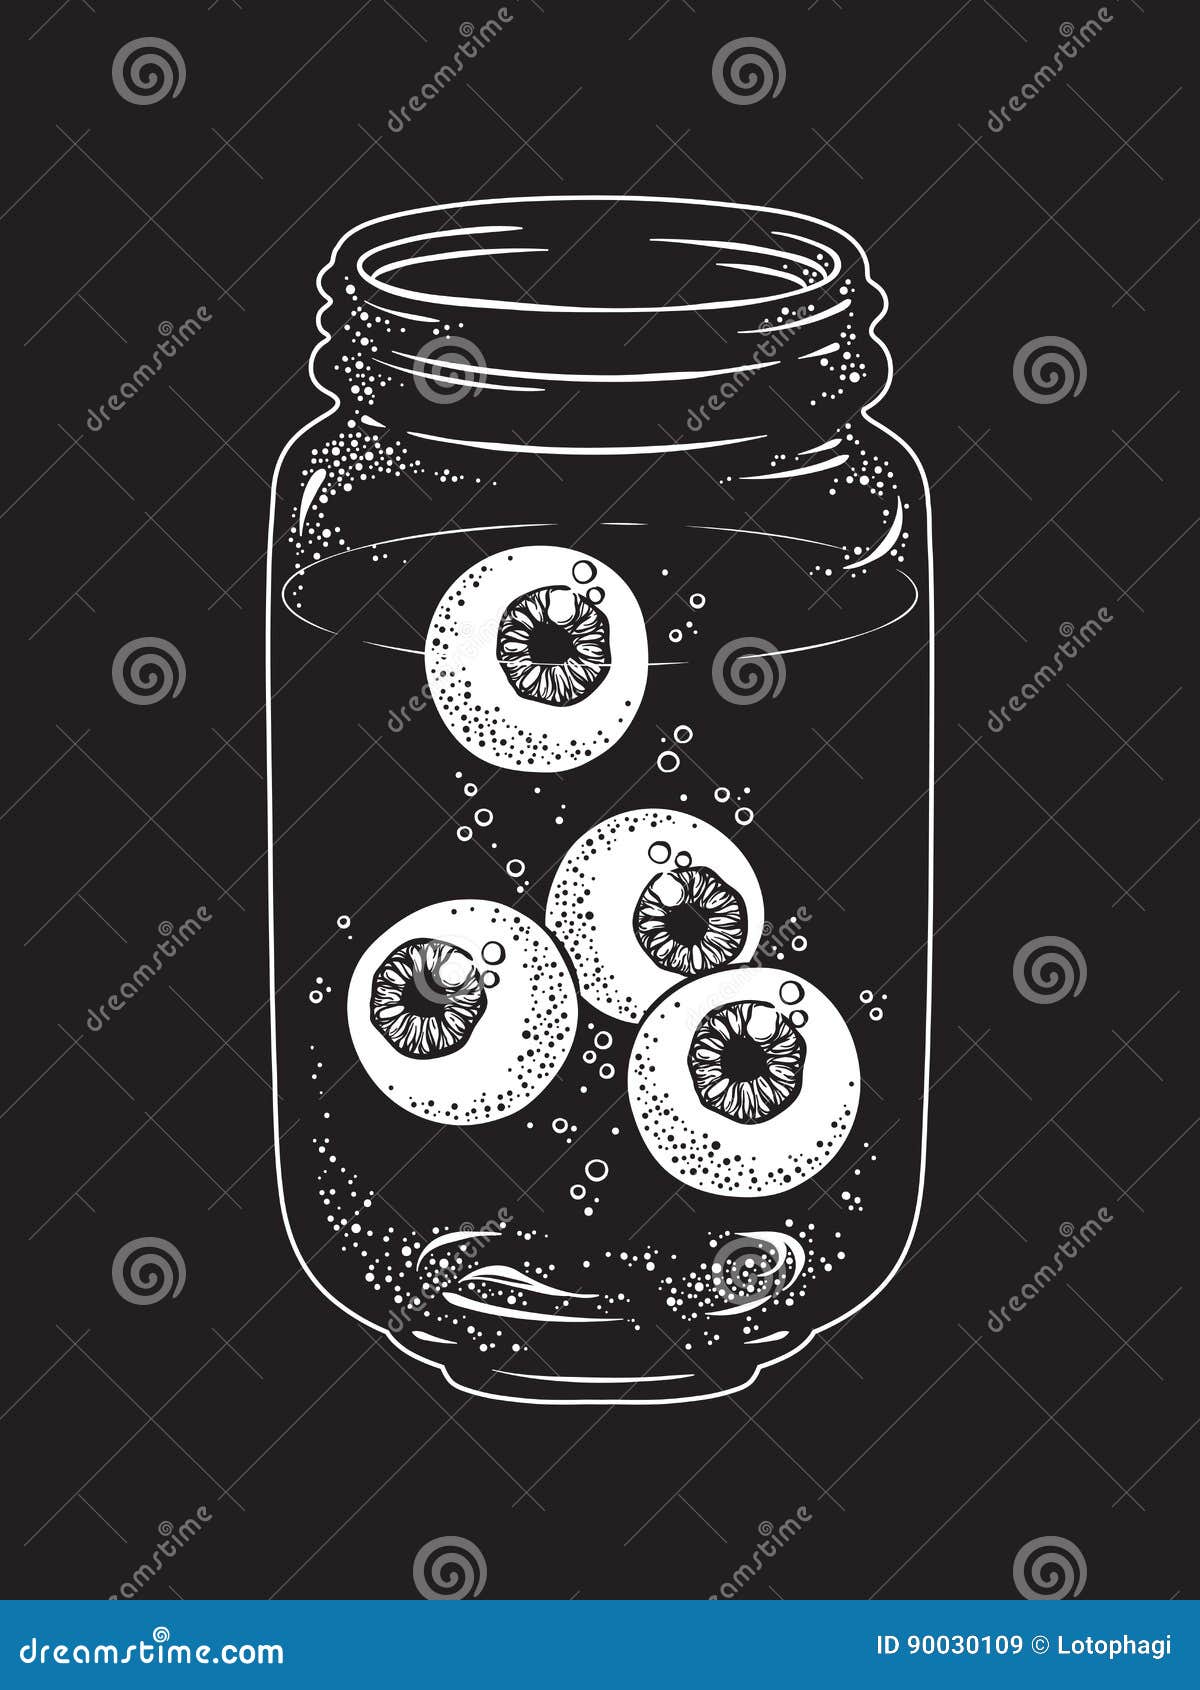 human eyeballs in glass jar . sticker, print or blackwork tattoo hand drawn  